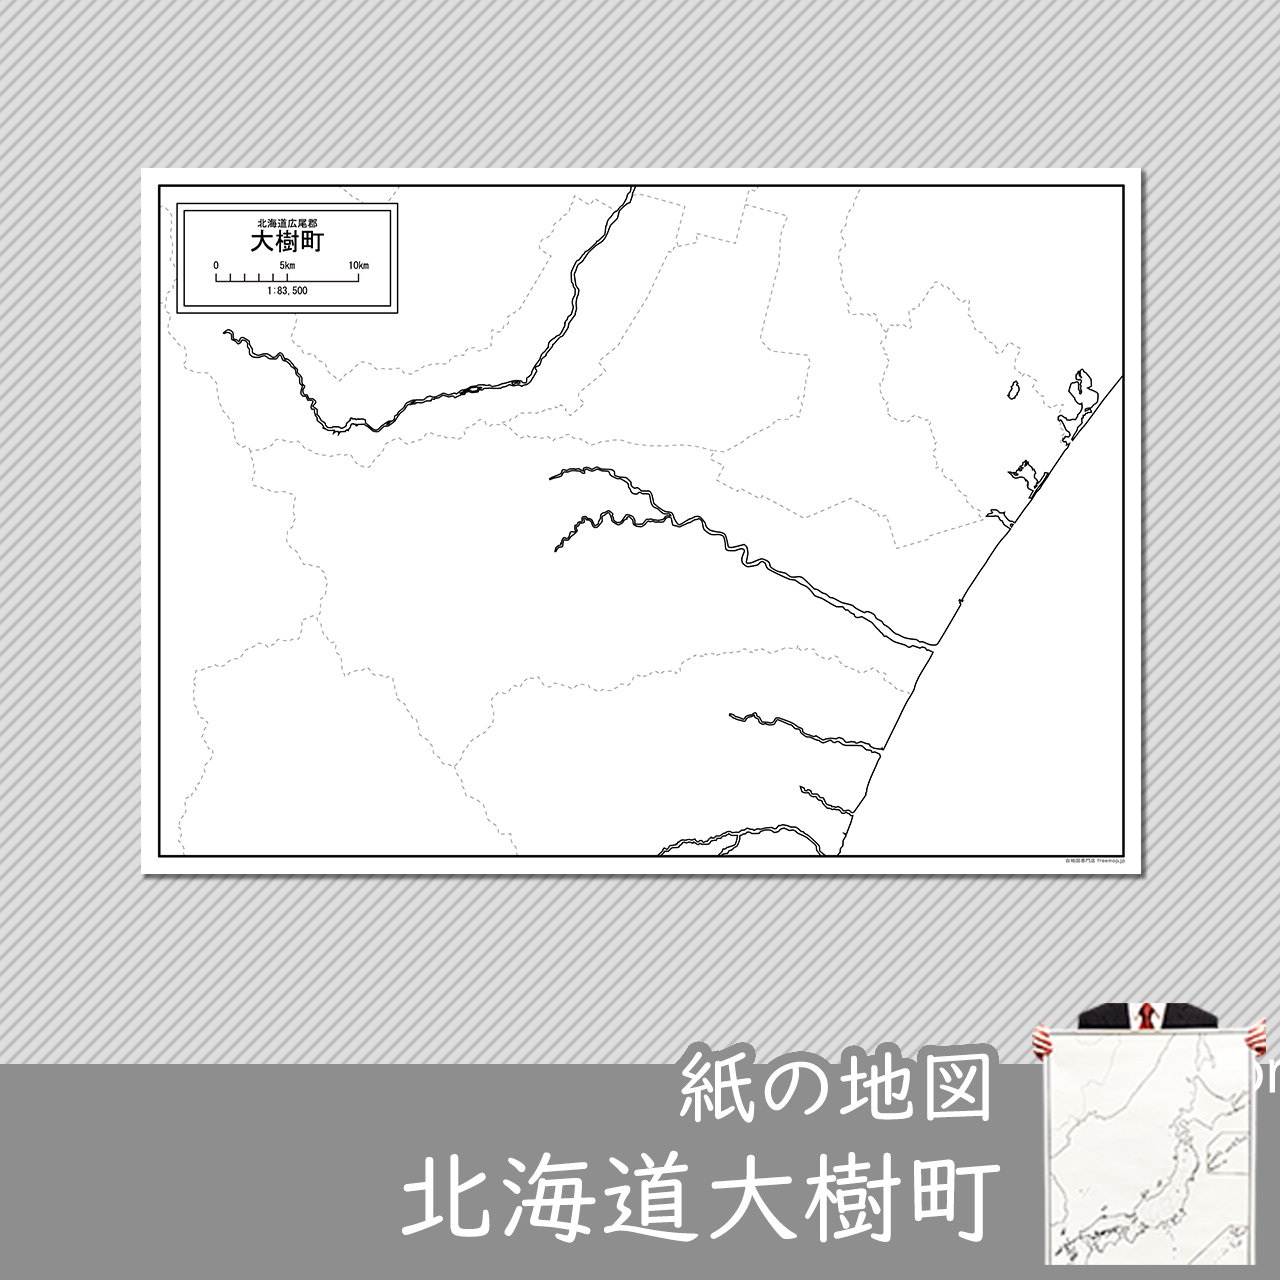 大樹町の紙の白地図のサムネイル